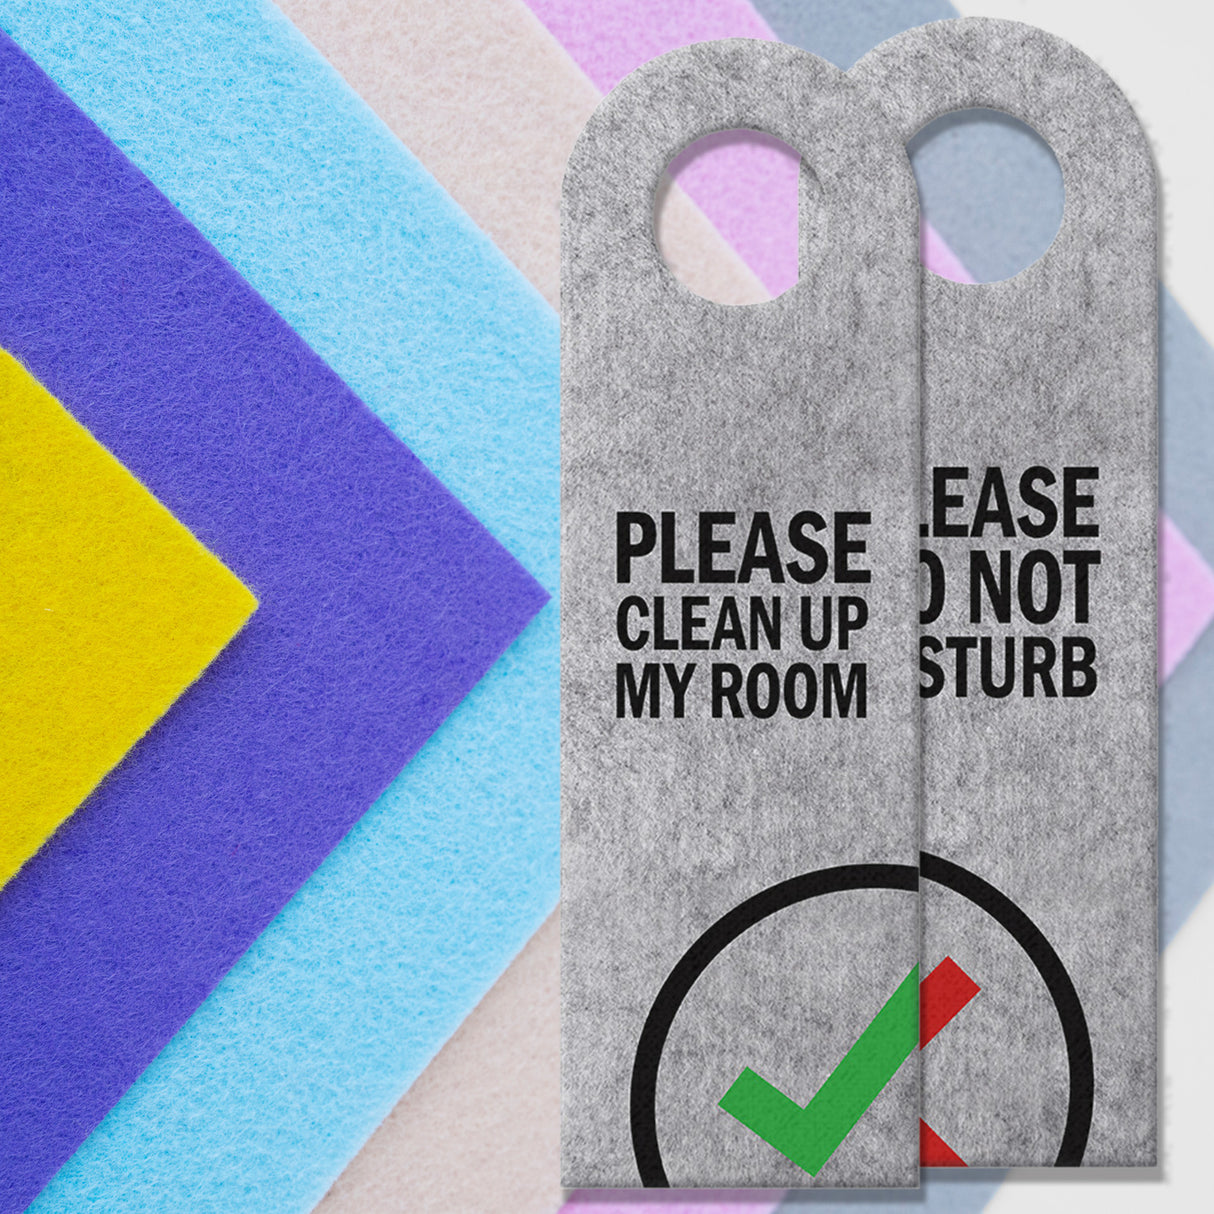 Please do not disturb oder Clean up my room Türhänger mit Symbolen